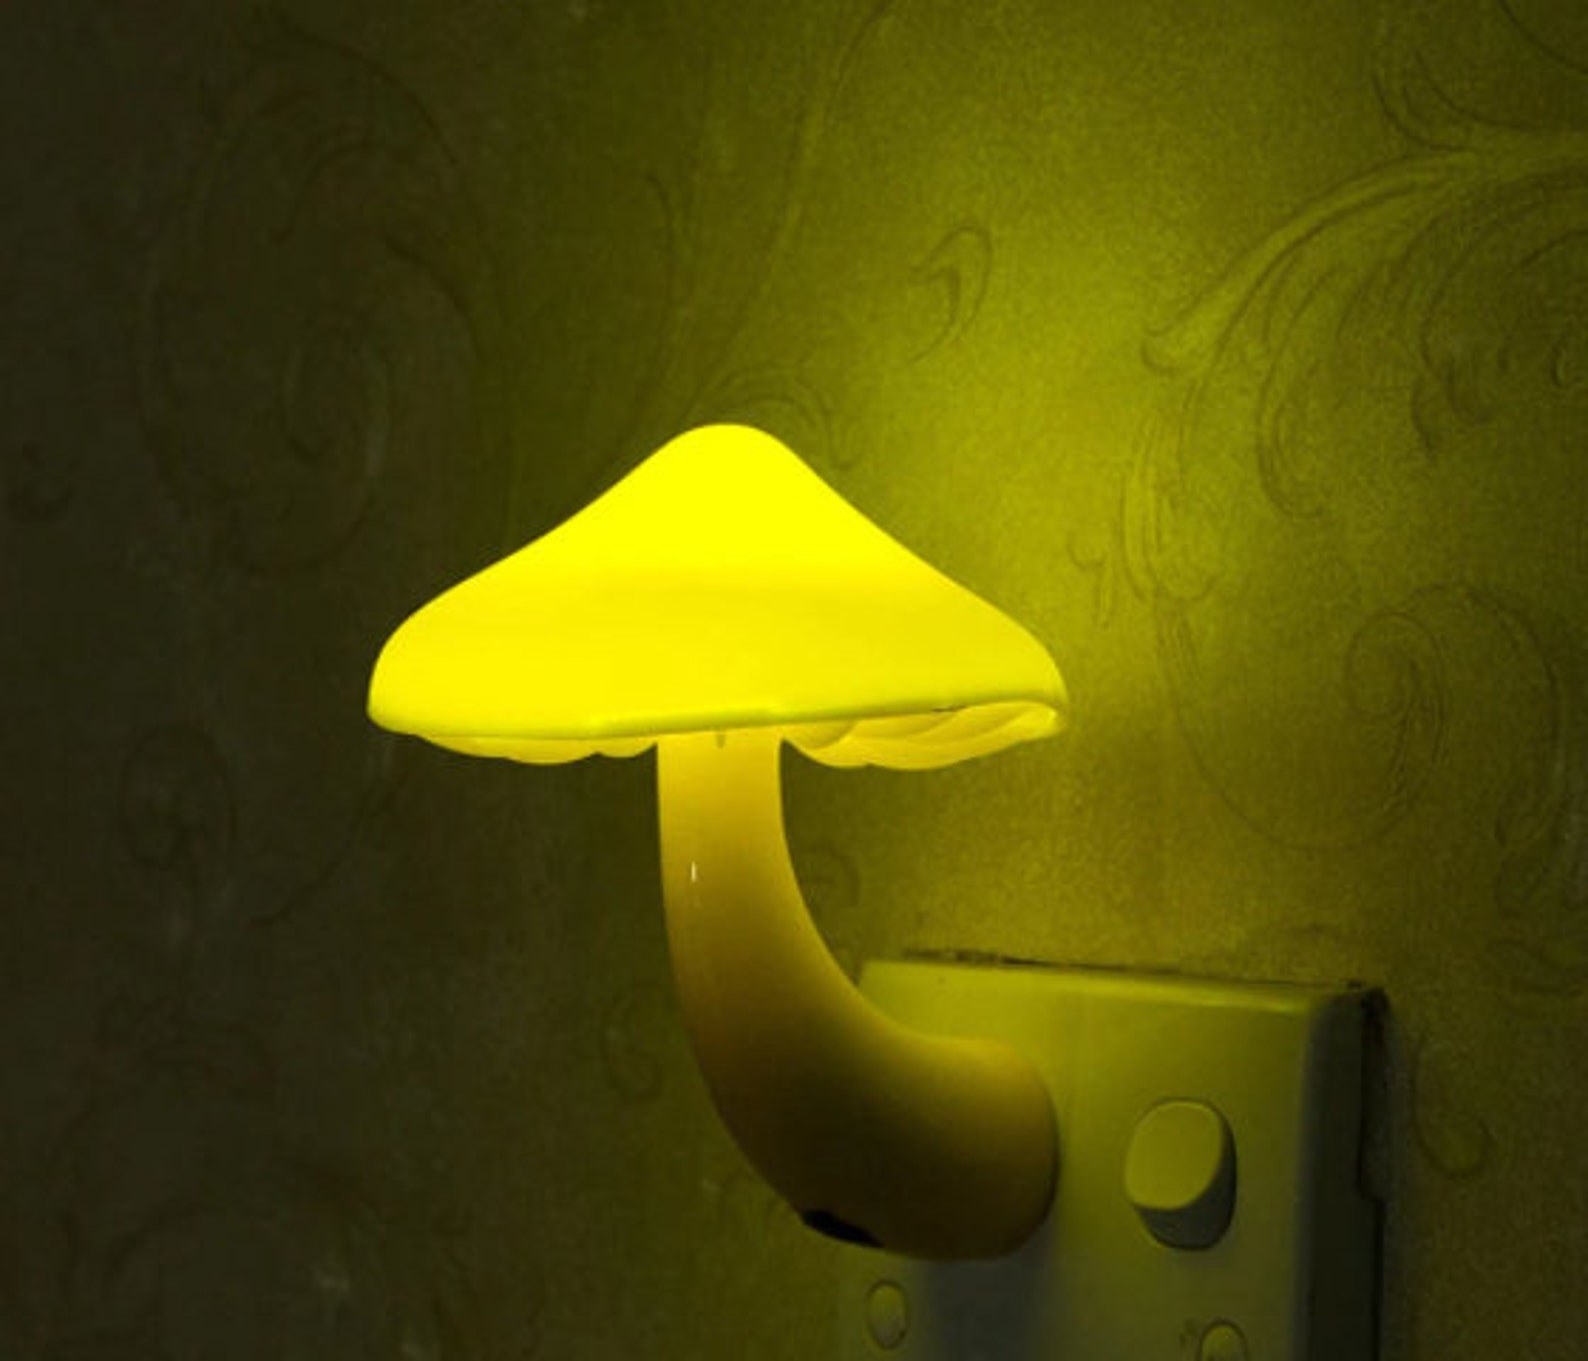 The mushroom nightlight lit up in a dark room